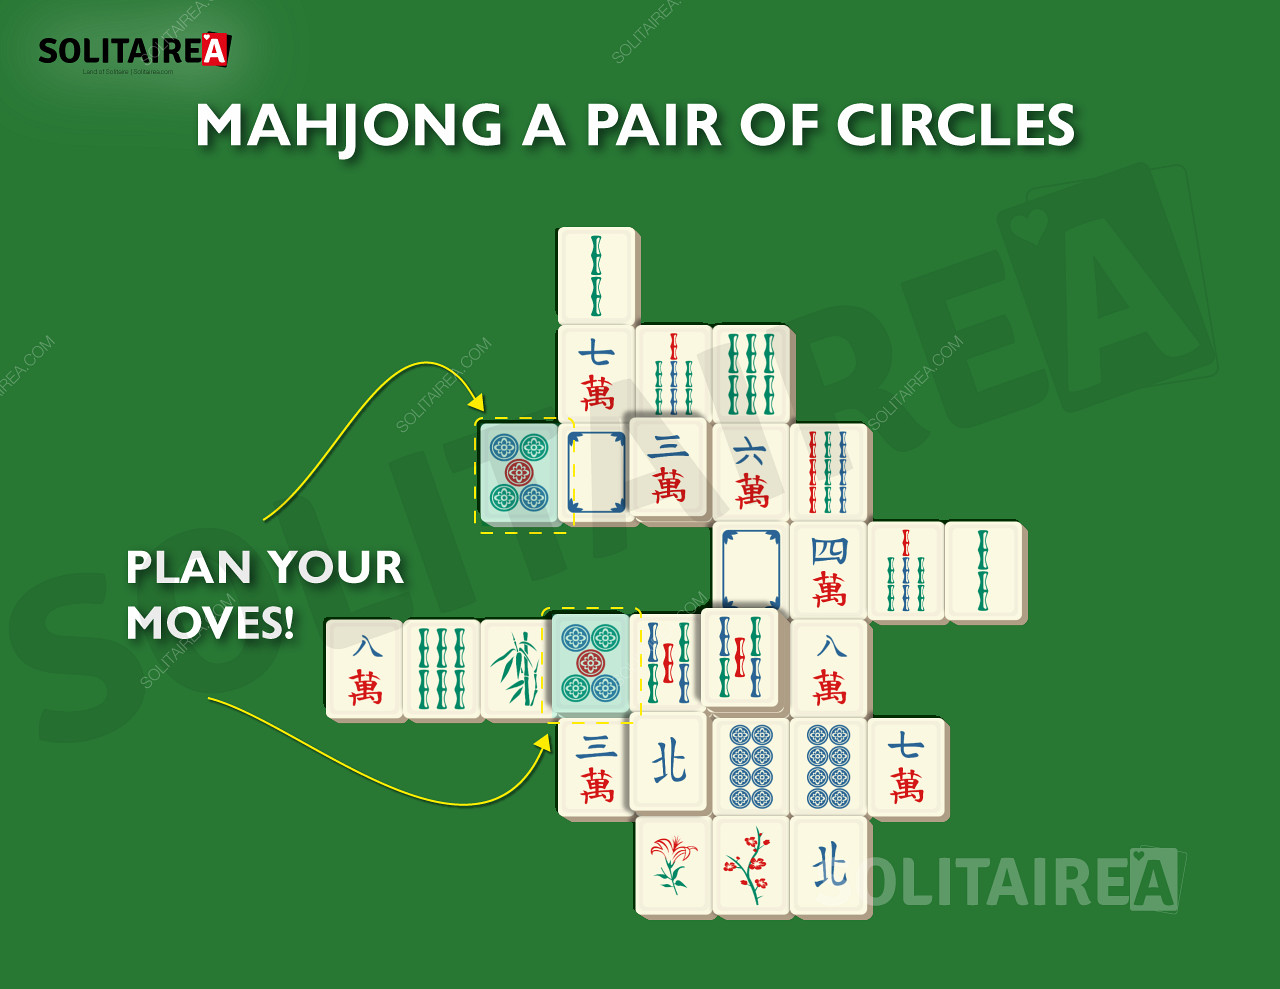 Imagen que muestra cómo planificar los movimientos para desarrollar una estrategia ganadora.